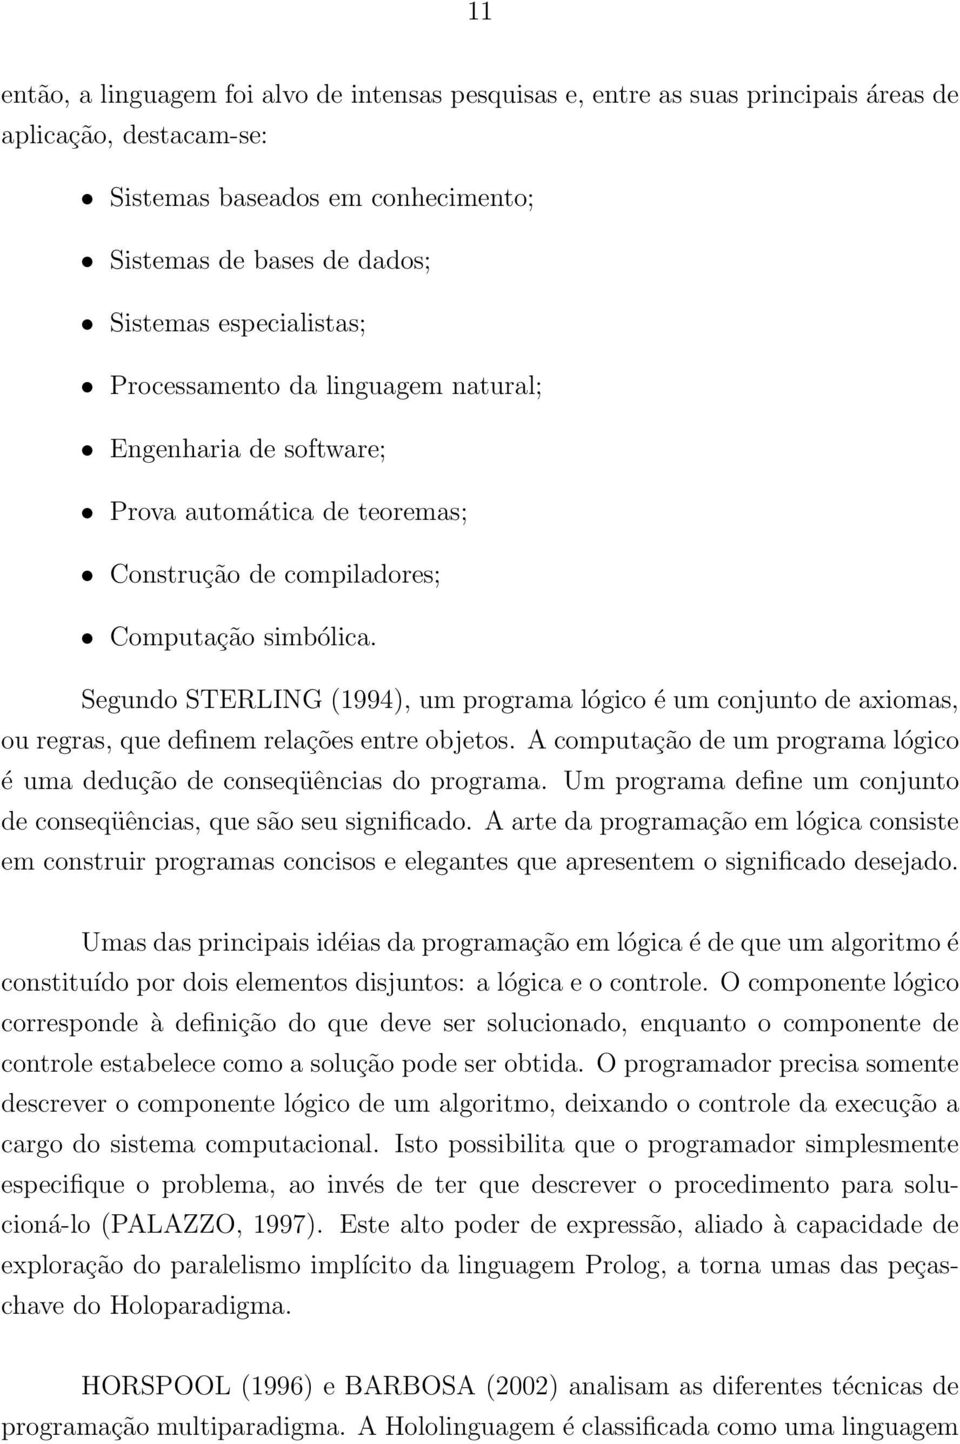 Segundo STERLING (1994), um programa lógico é um conjunto de axiomas, ou regras, que definem relações entre objetos. A computação de um programa lógico é uma dedução de conseqüências do programa.